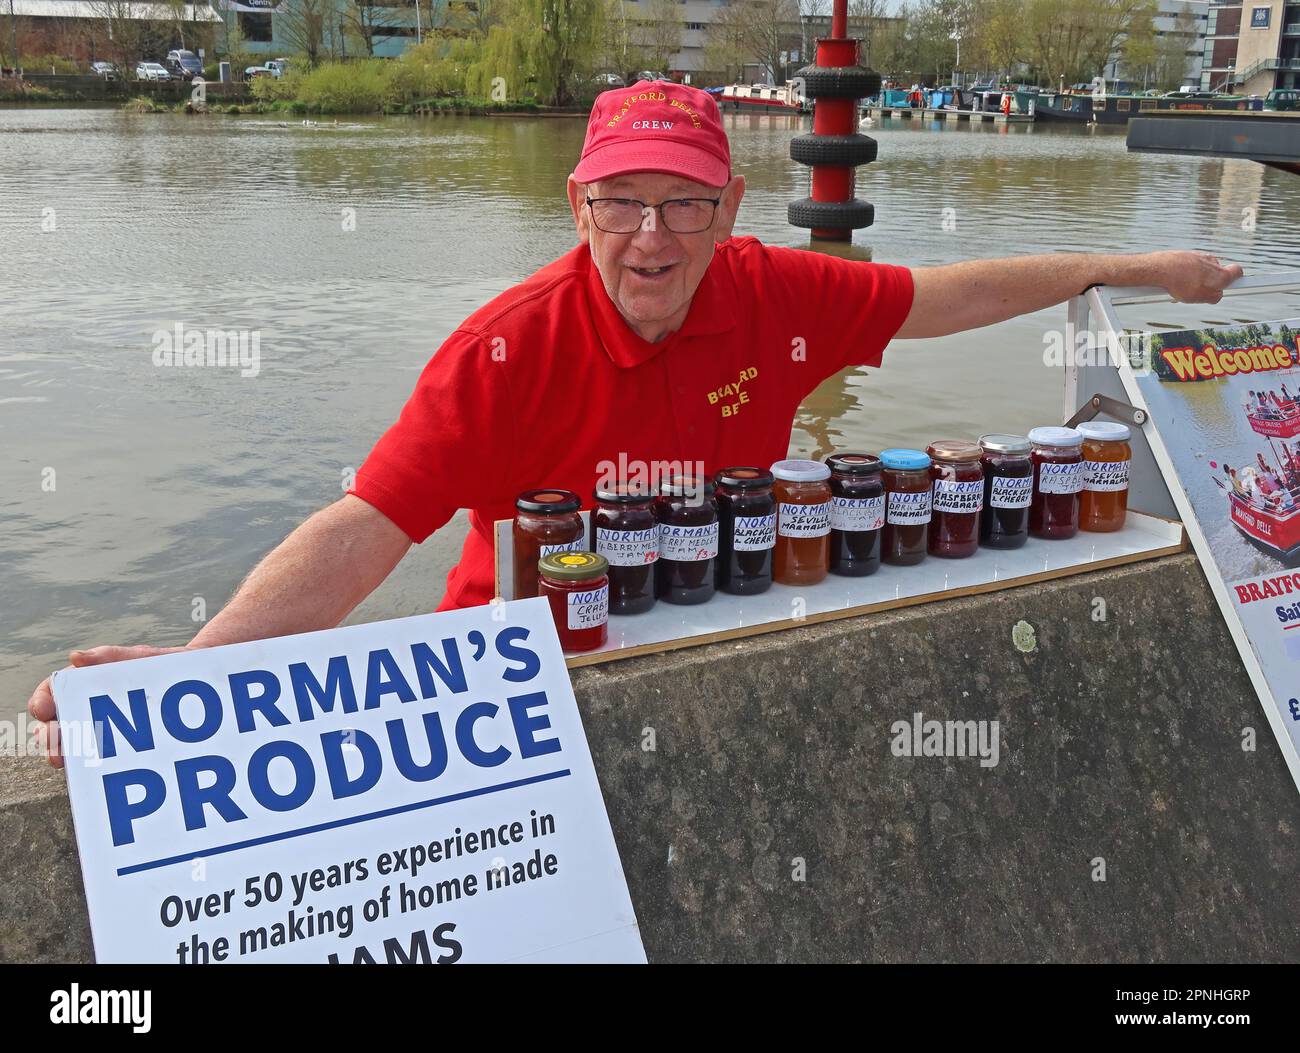 Normans Produce, Norman Scargill Lincoln Jam Maker seit über 50 Jahren arbeitet an der Brayford Belle, Lincoln, Lincolnshire, England, Großbritannien, LN1 1YX Stockfoto